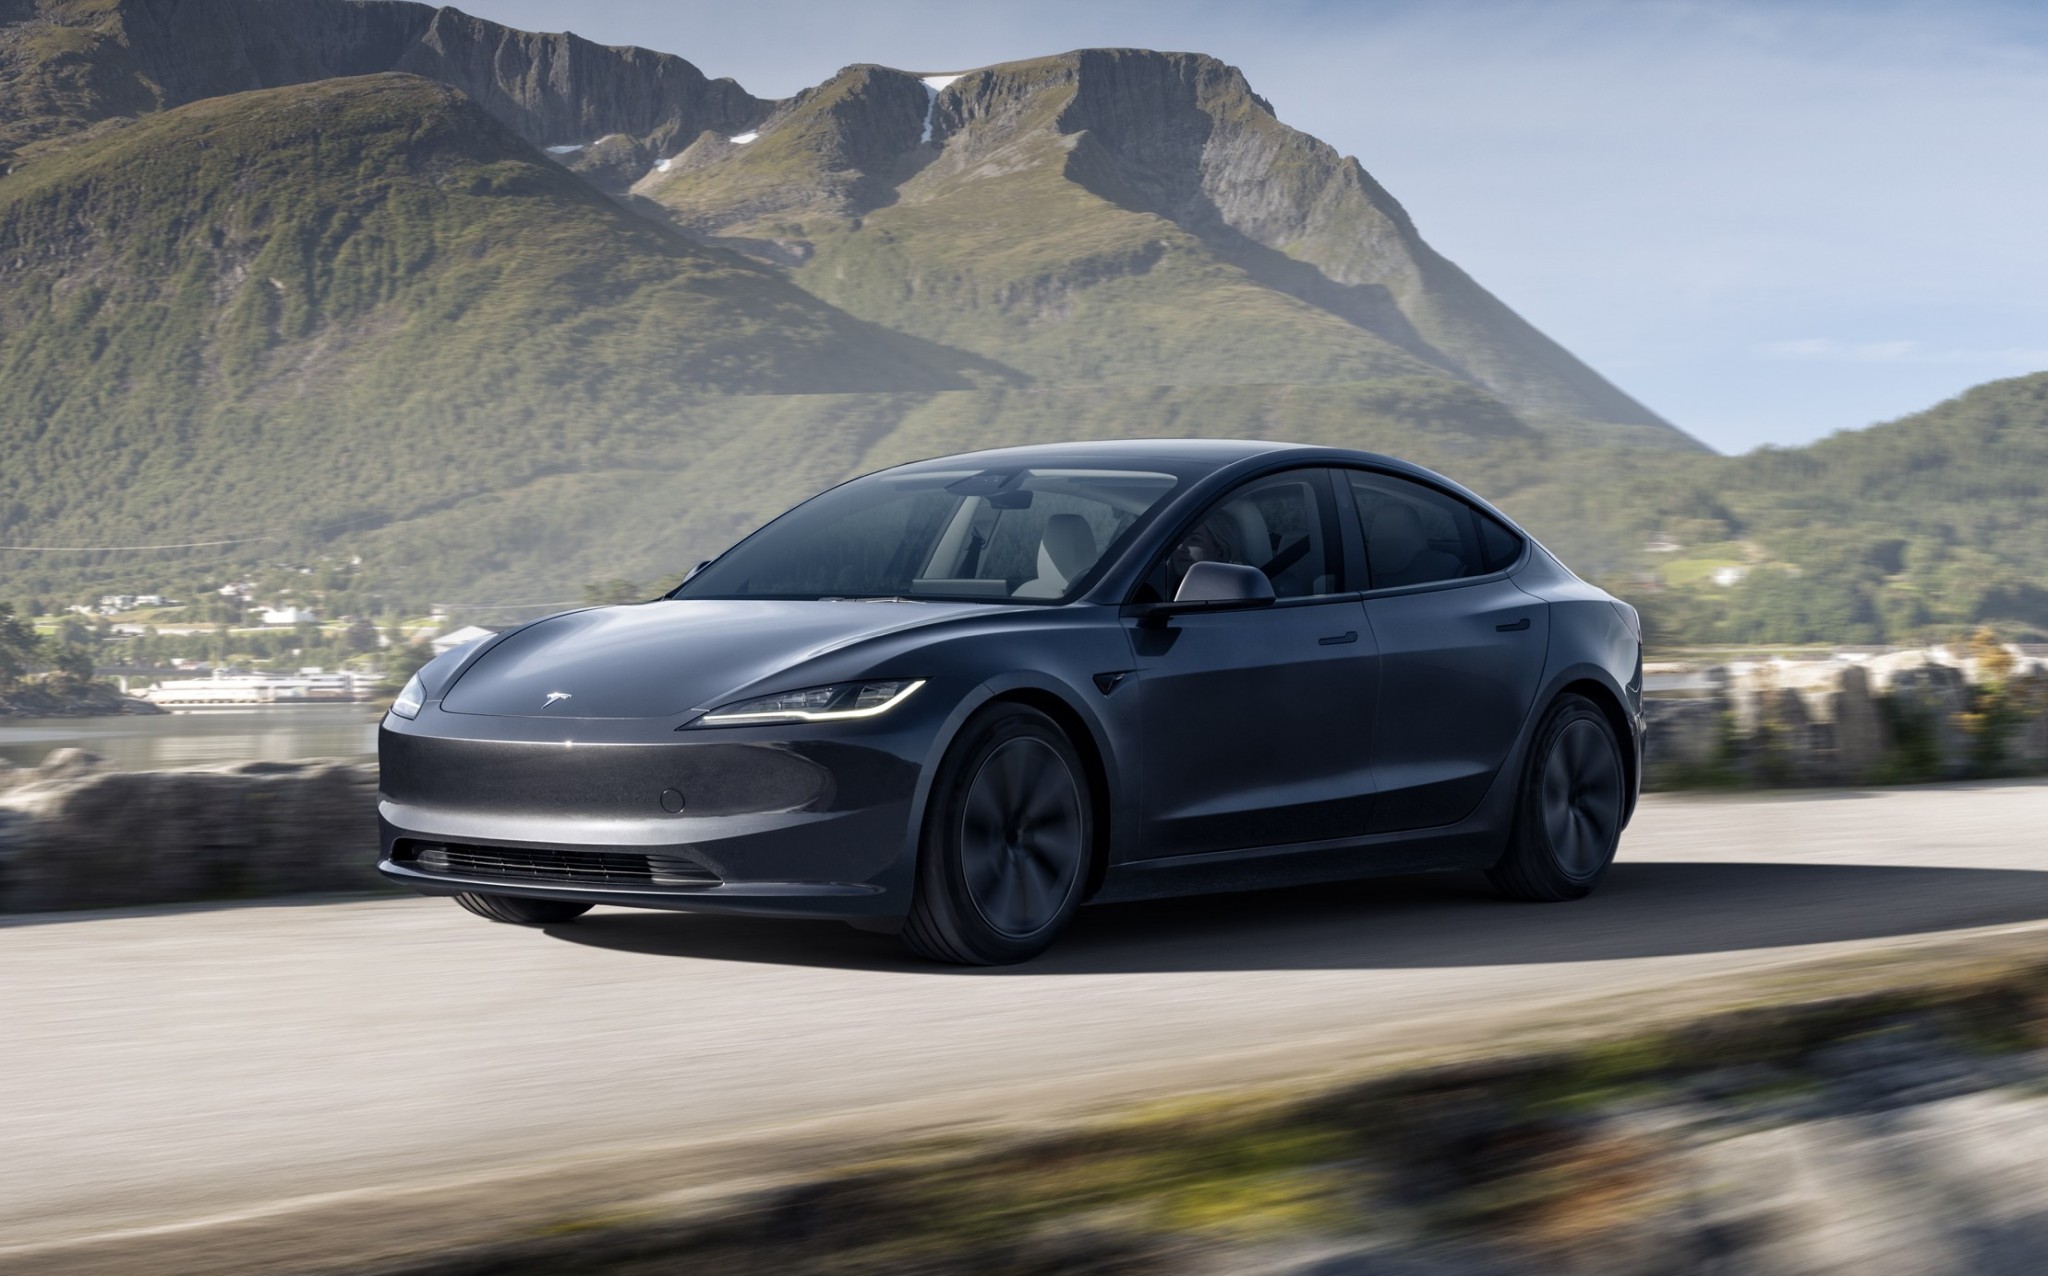 Euro NCAP Critiques Tesla's Touch Controls Safety Concerns Arise